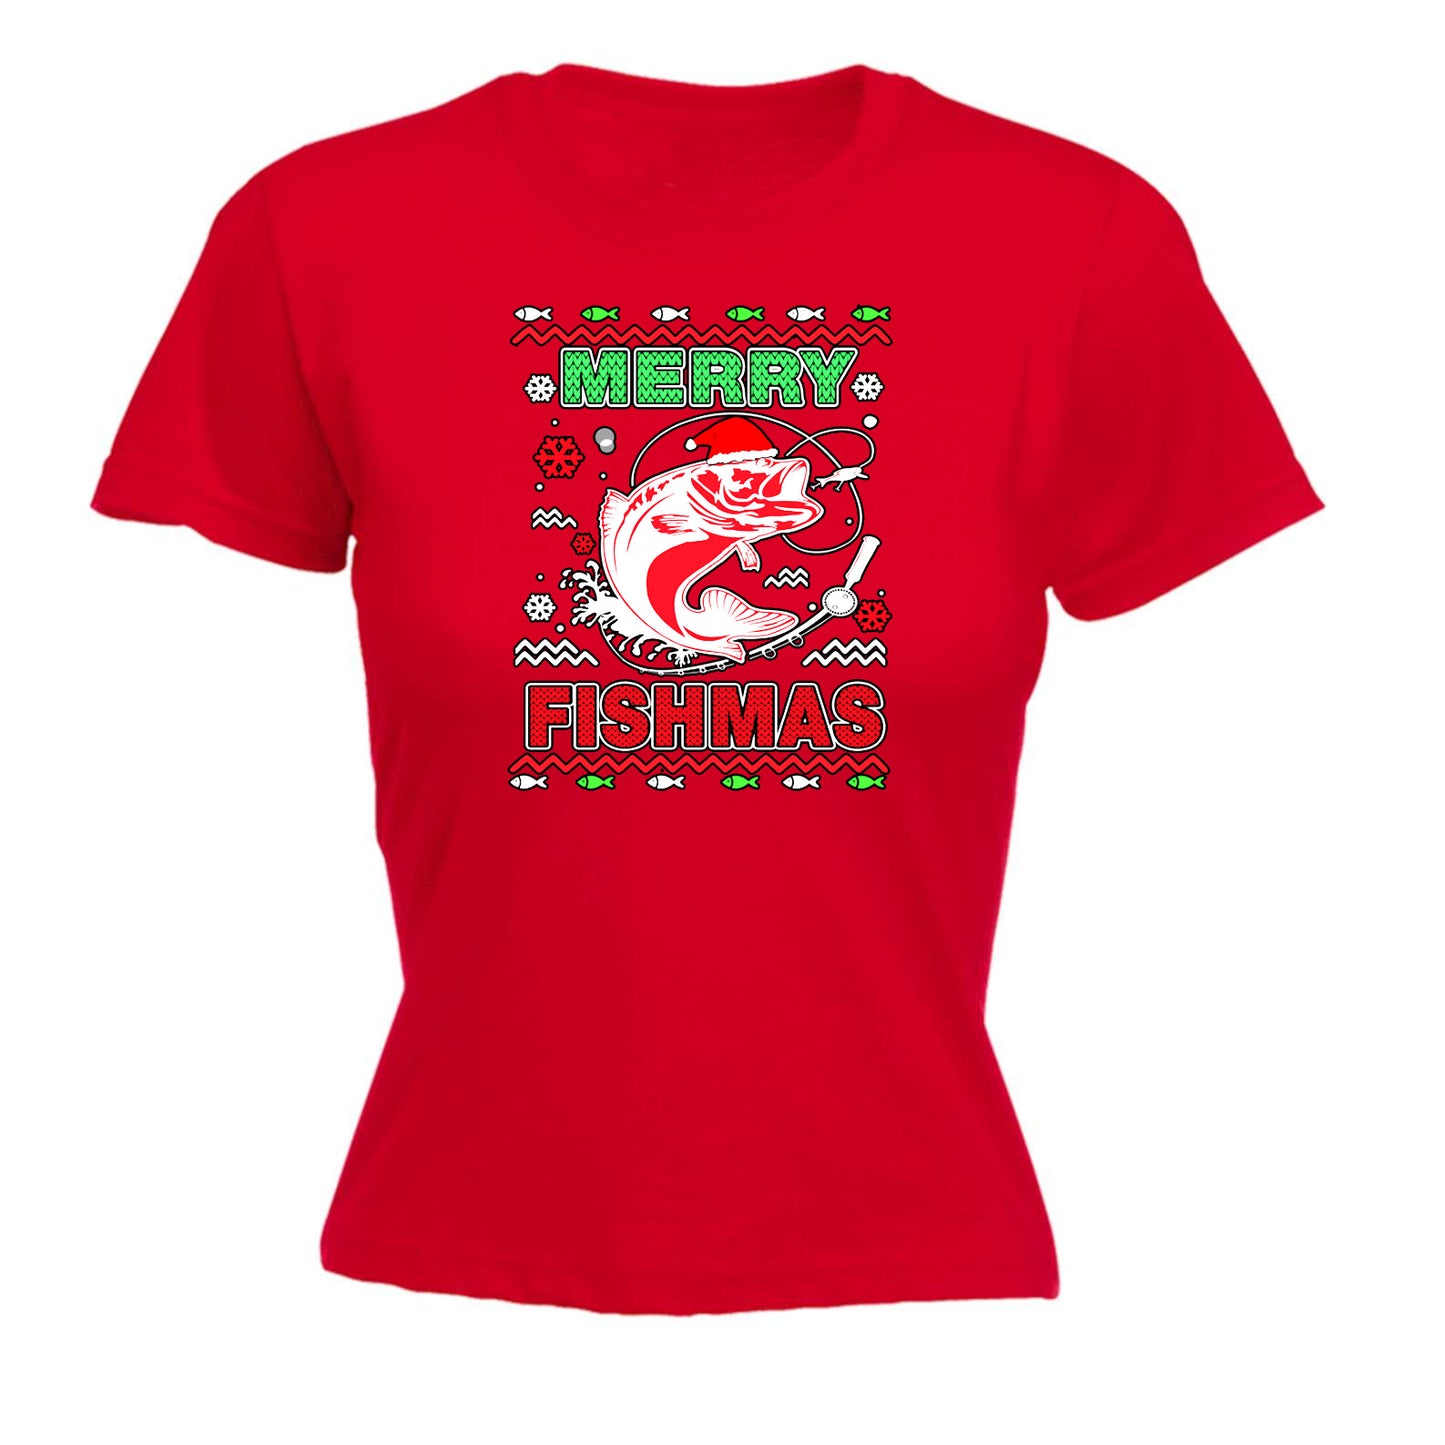 Merry Fishmas Christmas Xmas Fish Fishing - Funny Womens T-Shirt Tshirt